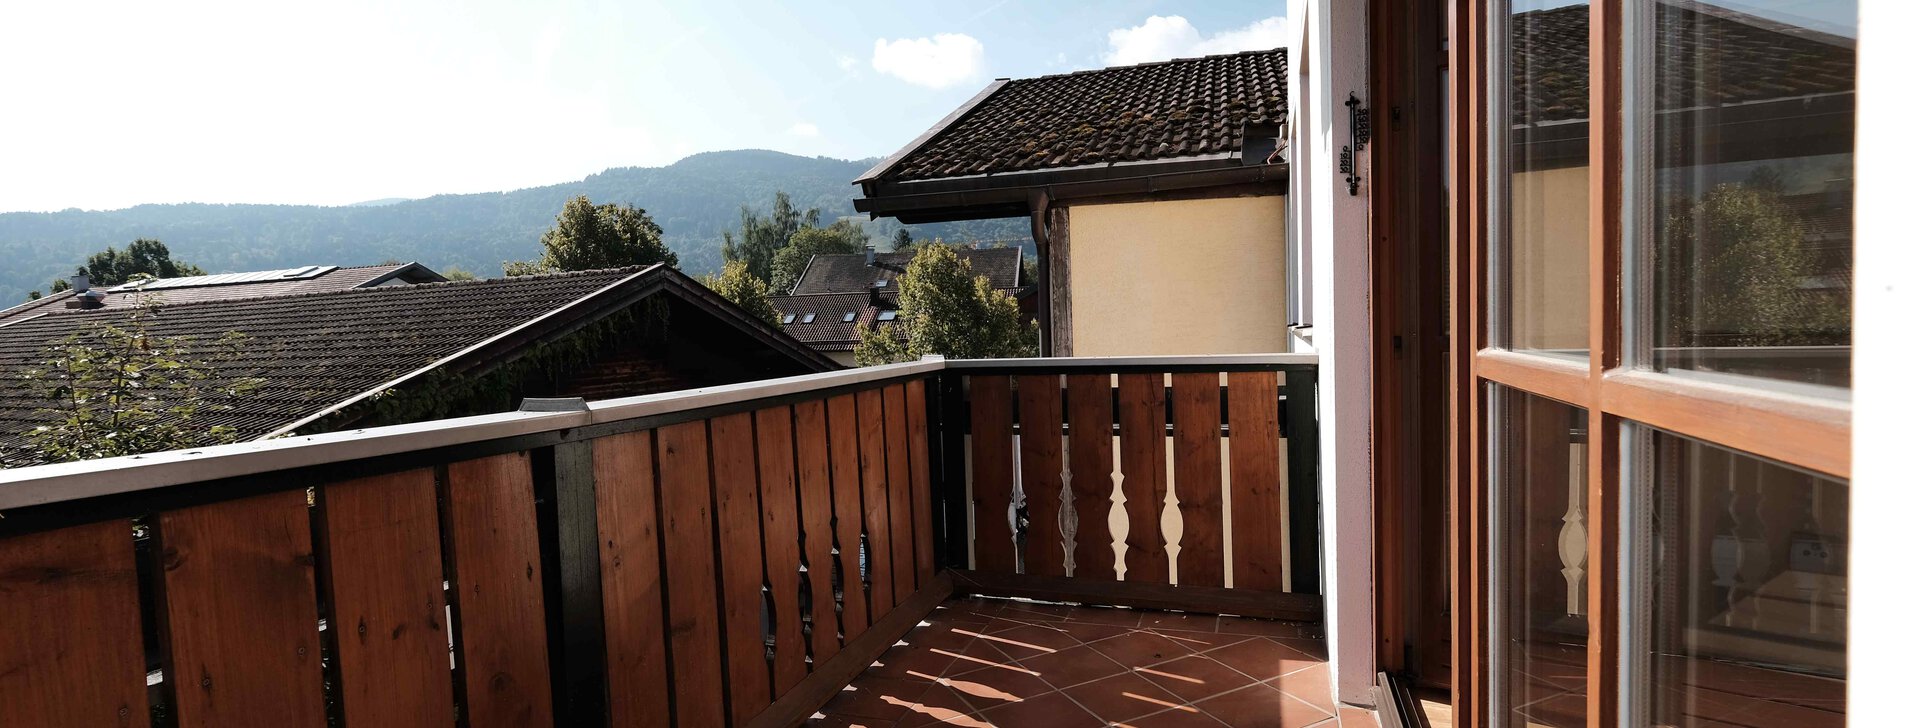 Balkon mit Ausblick, Wohnung in Bergen, Immobilie kaufen, Bergen | © HausBauHaus GmbH